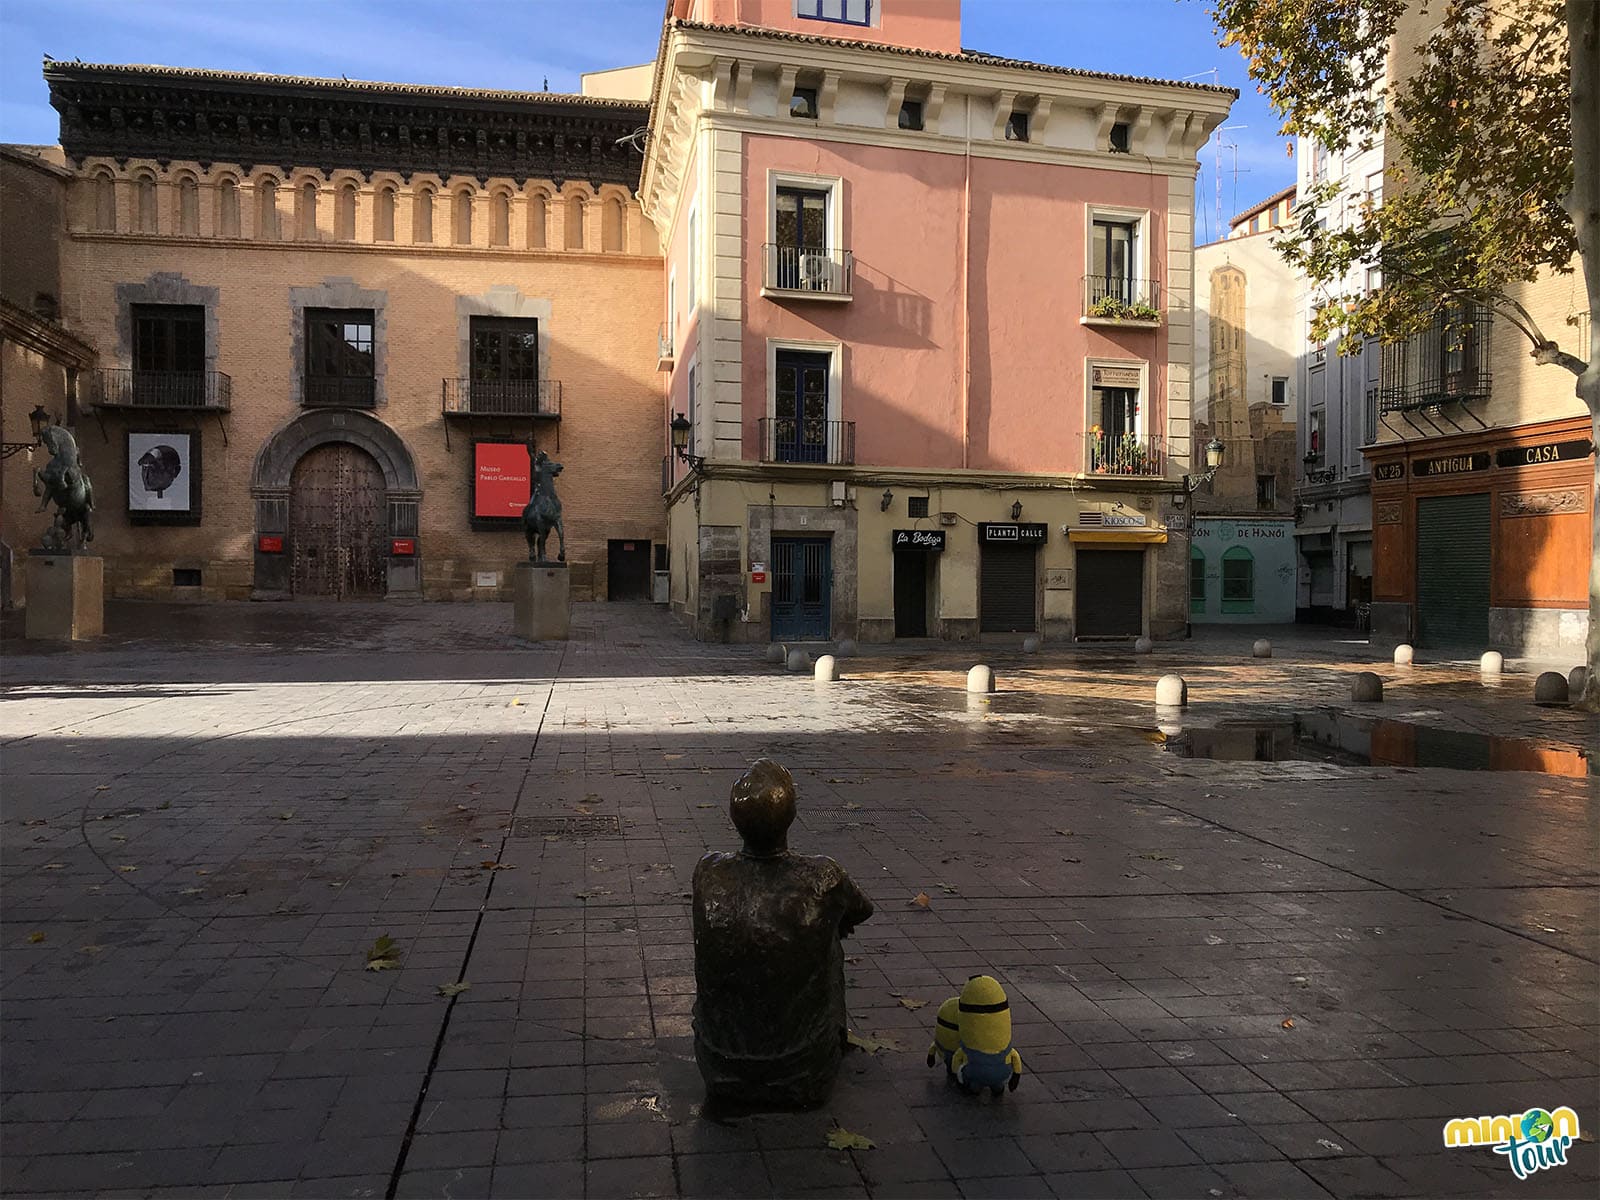 La Plaza de San Felipe, una de las cosas que ver en el casco histórico de Zaragoza